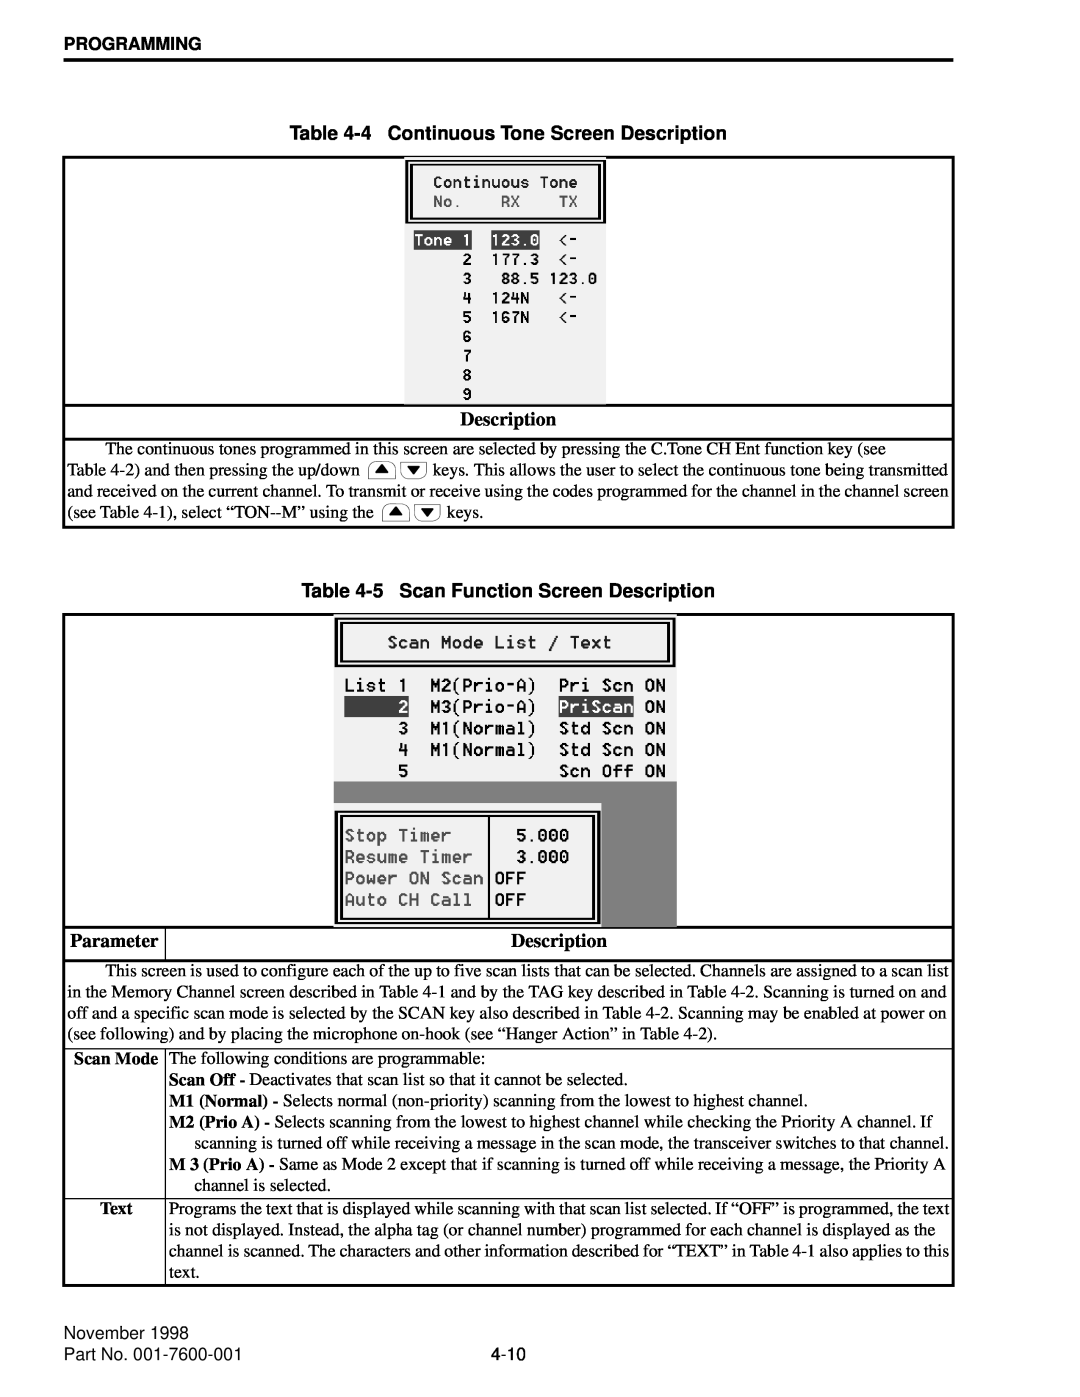 EFJohnson 761X, 764X 4Continuous Tone Screen Description, 5Scan Function Screen Description, November, Part No, 4-10 